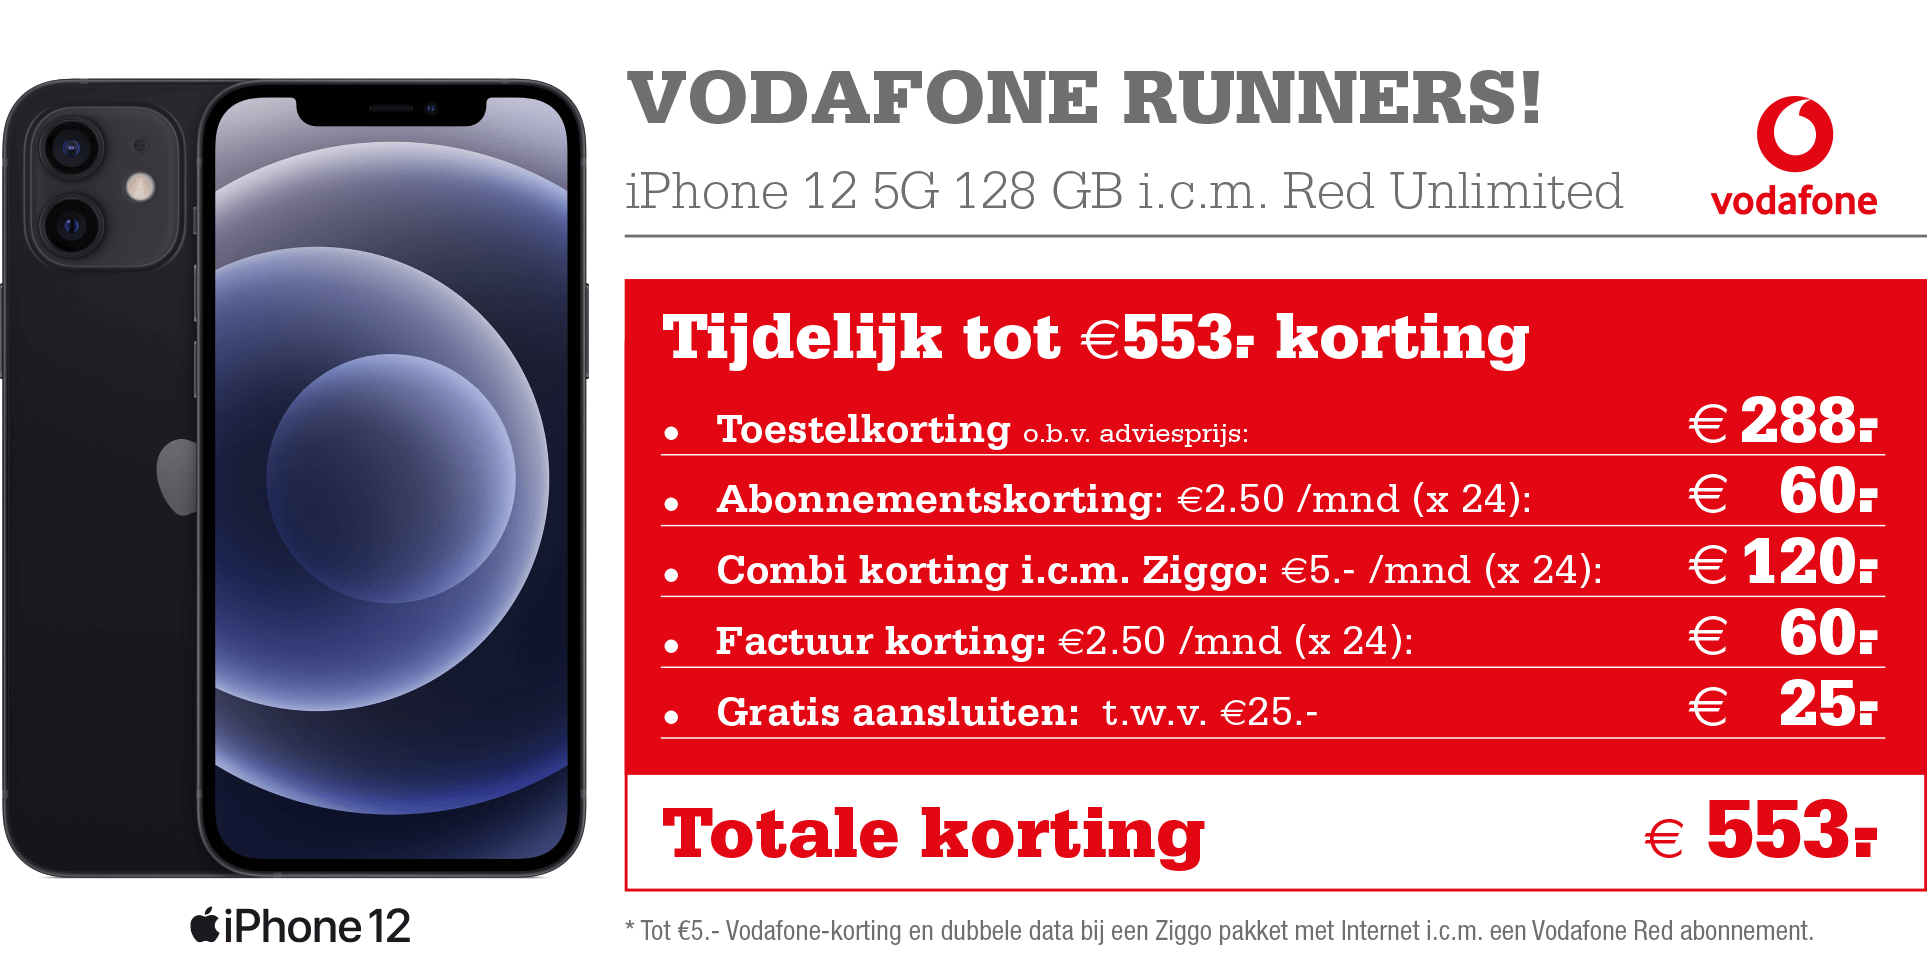 Vodafone Runners iPhone 12 korting